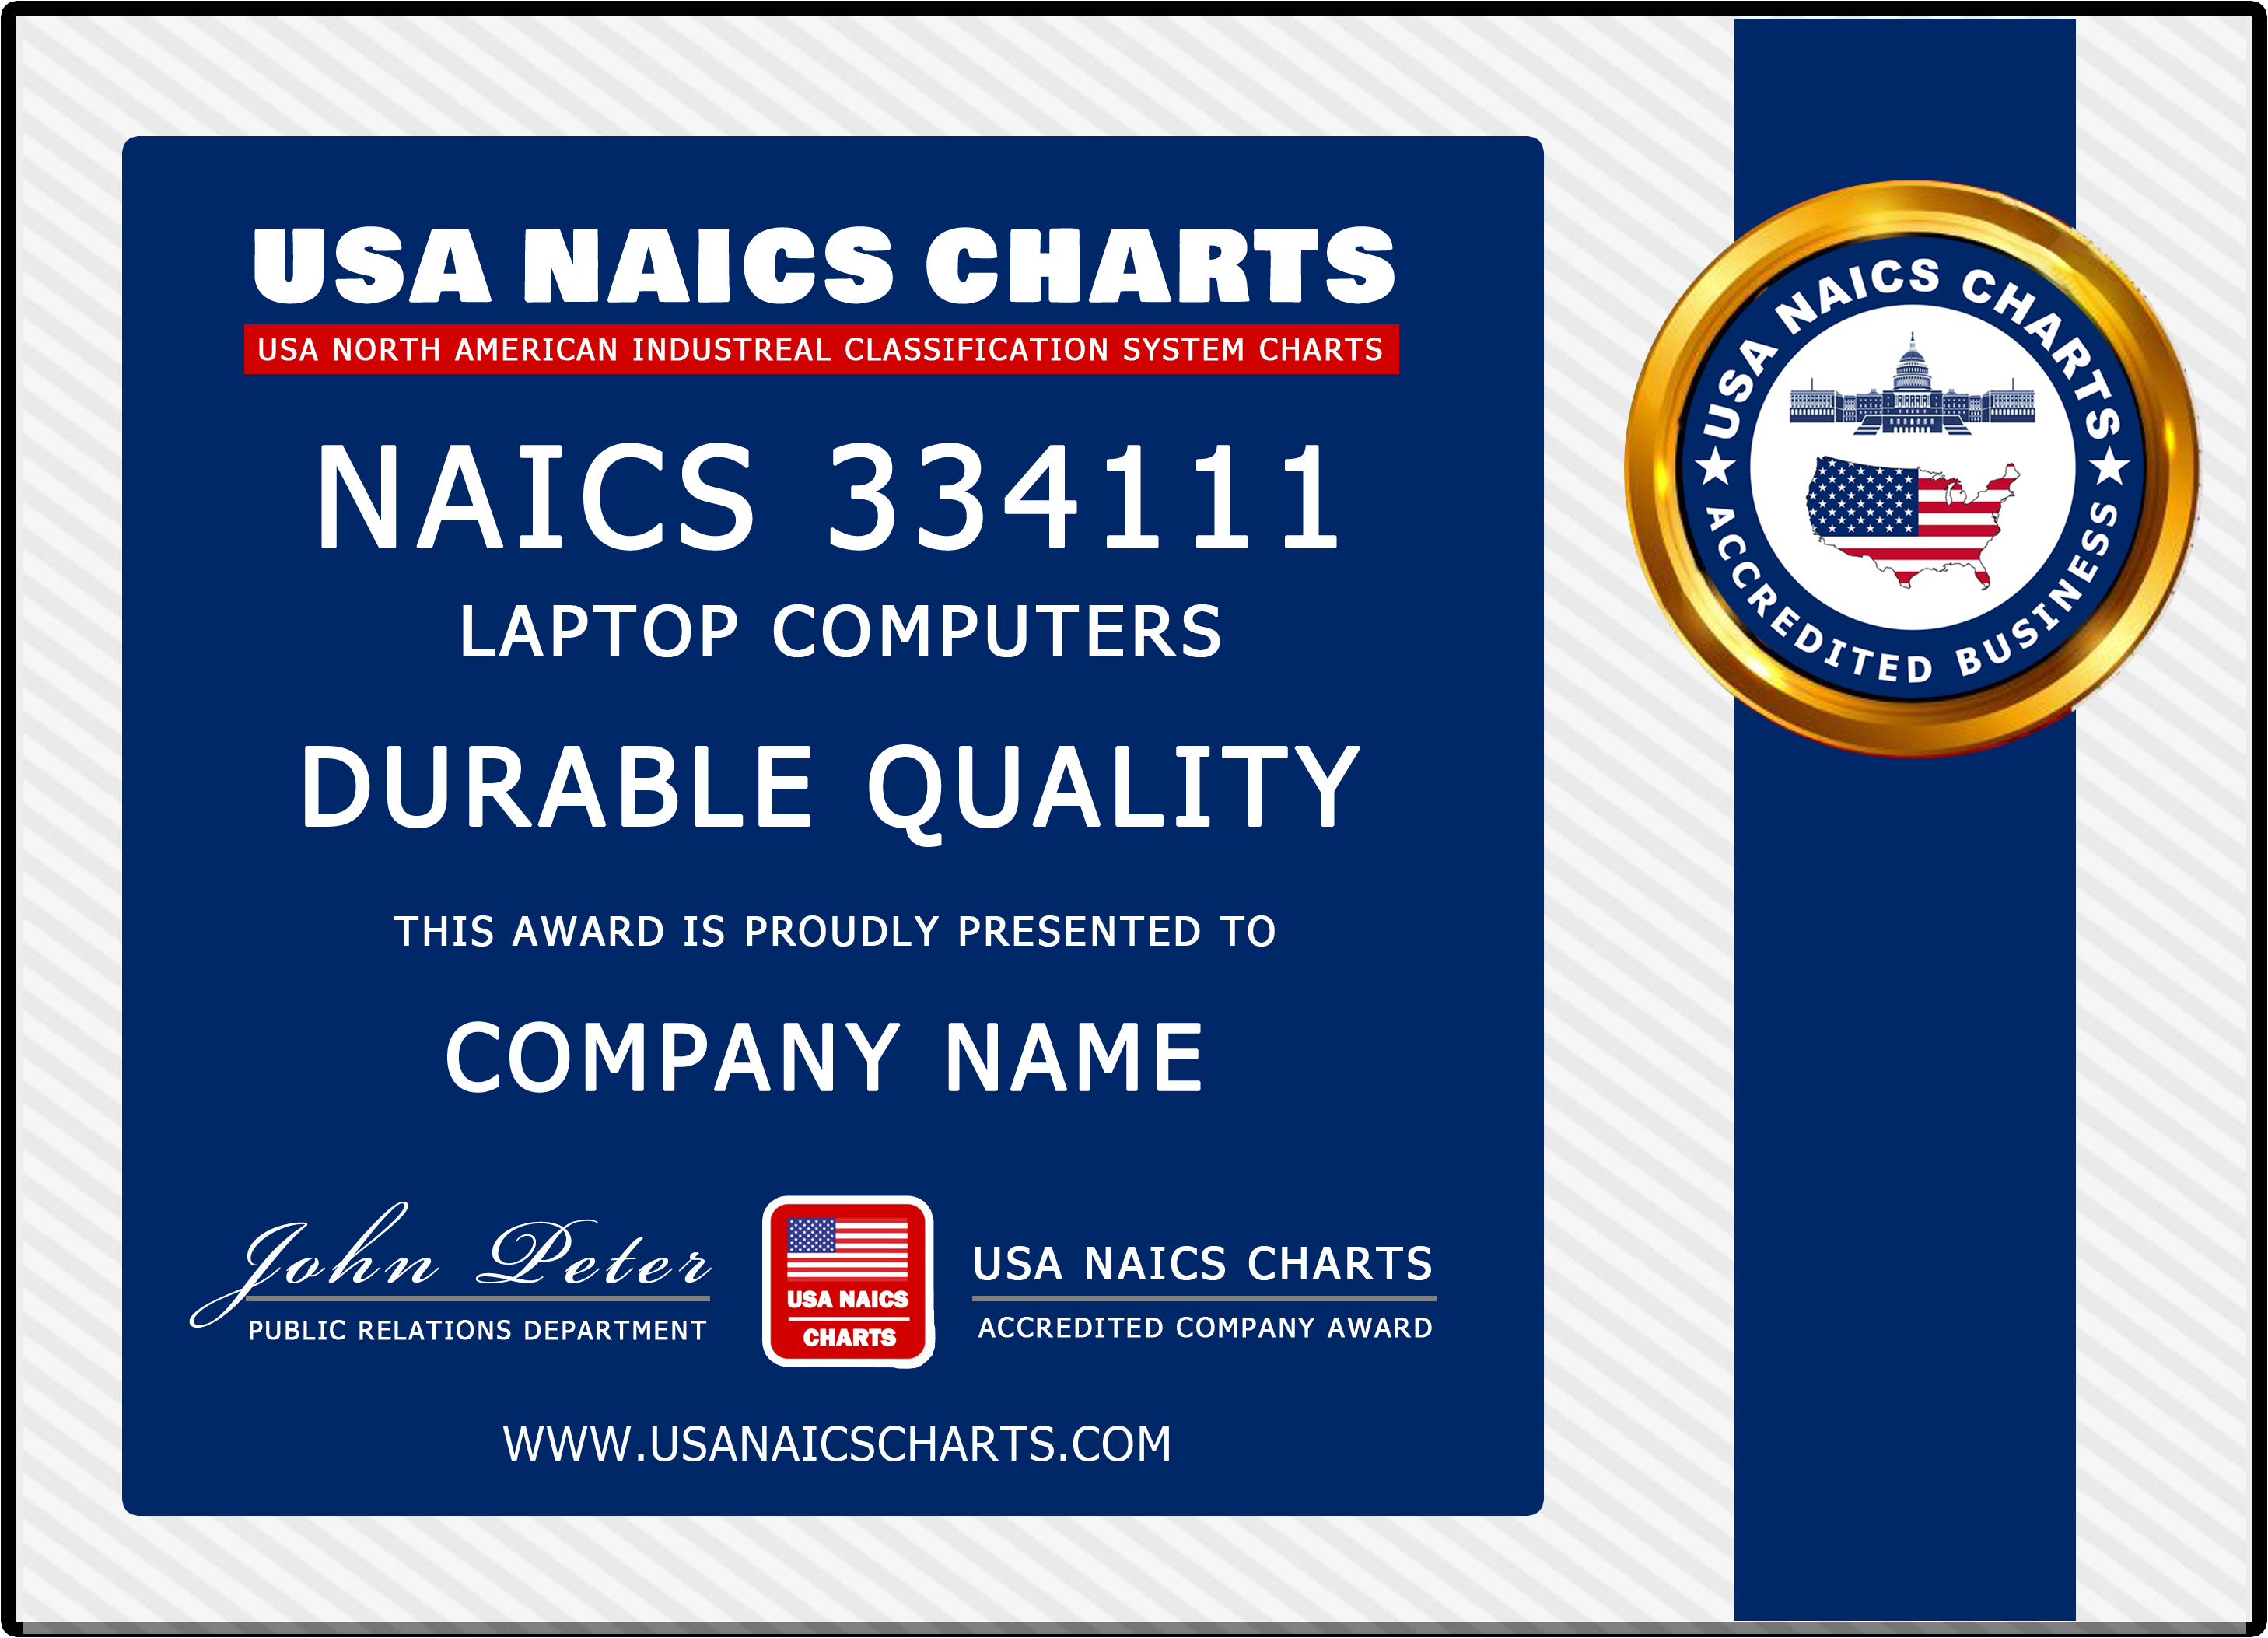 USA NAICS Code Awards 2